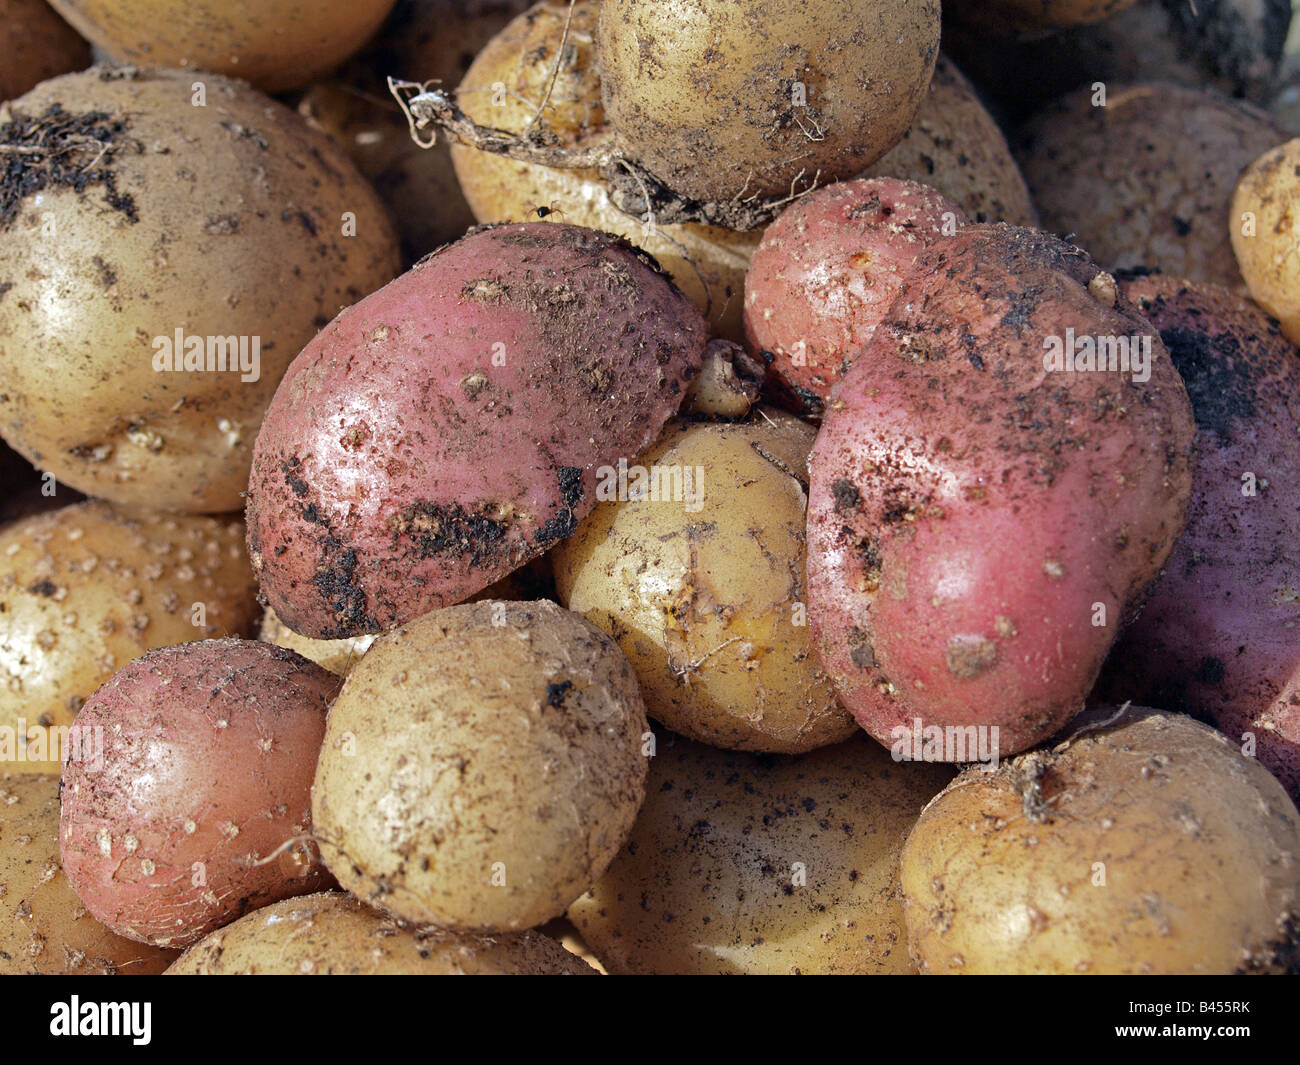 Potato Stock Photo